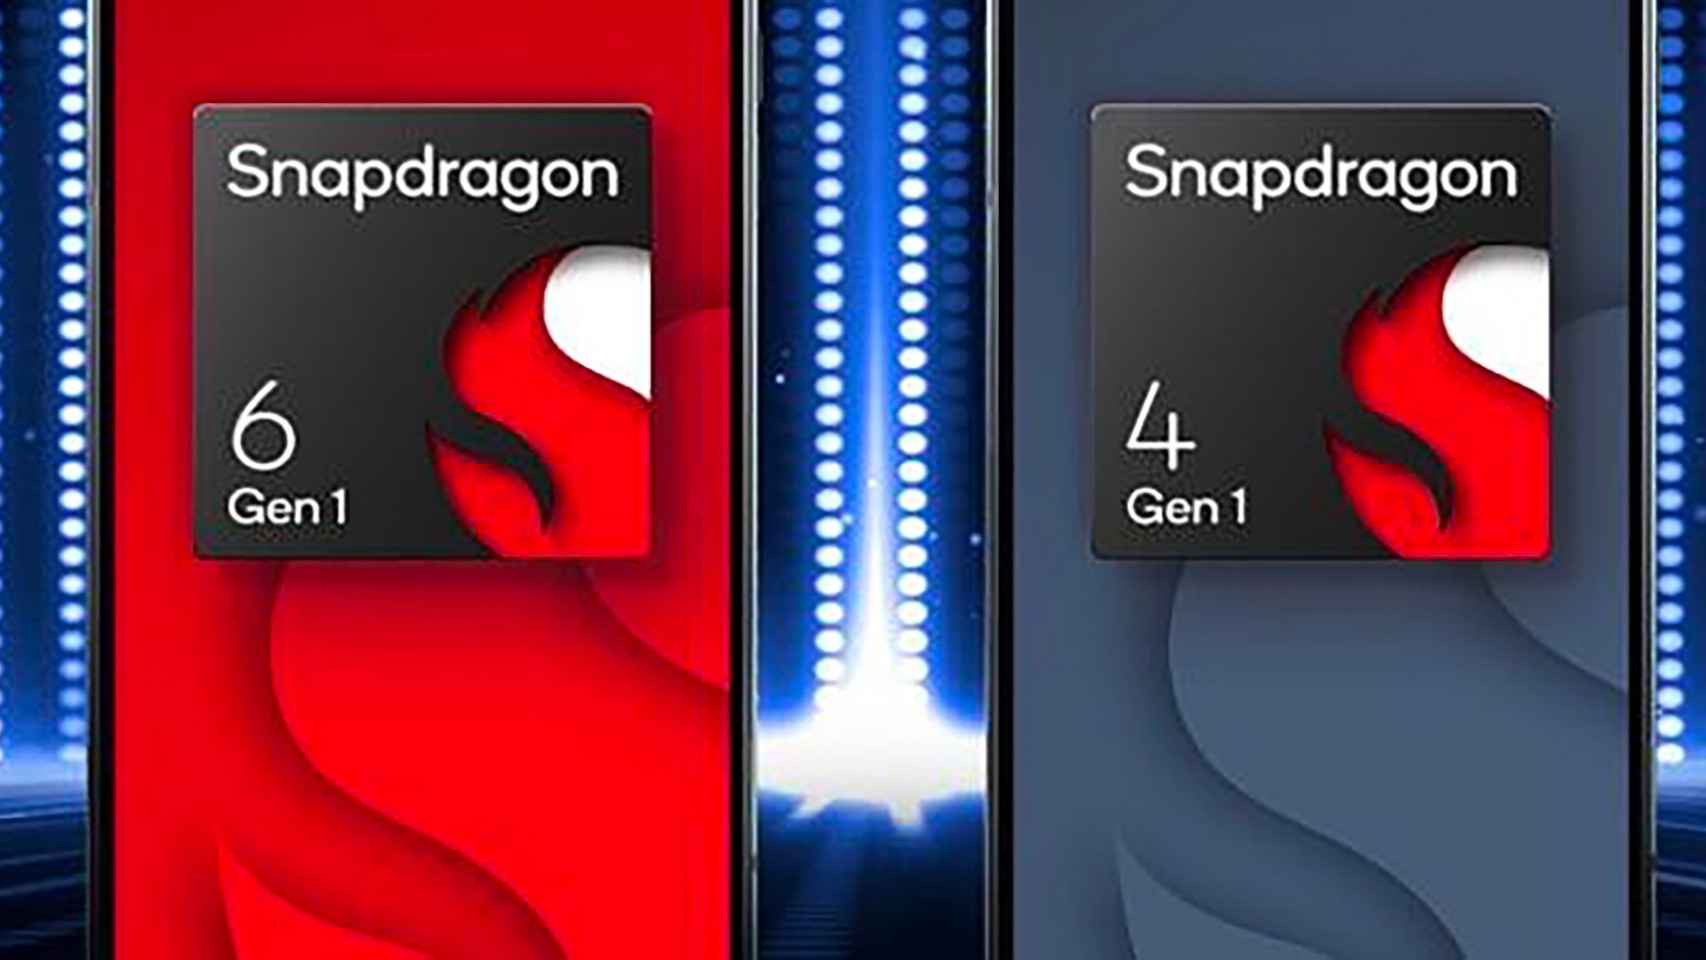 Qualcomm anuncia el Snapdragon 6 Gen 1 y Snapdragon 4 Gen 1